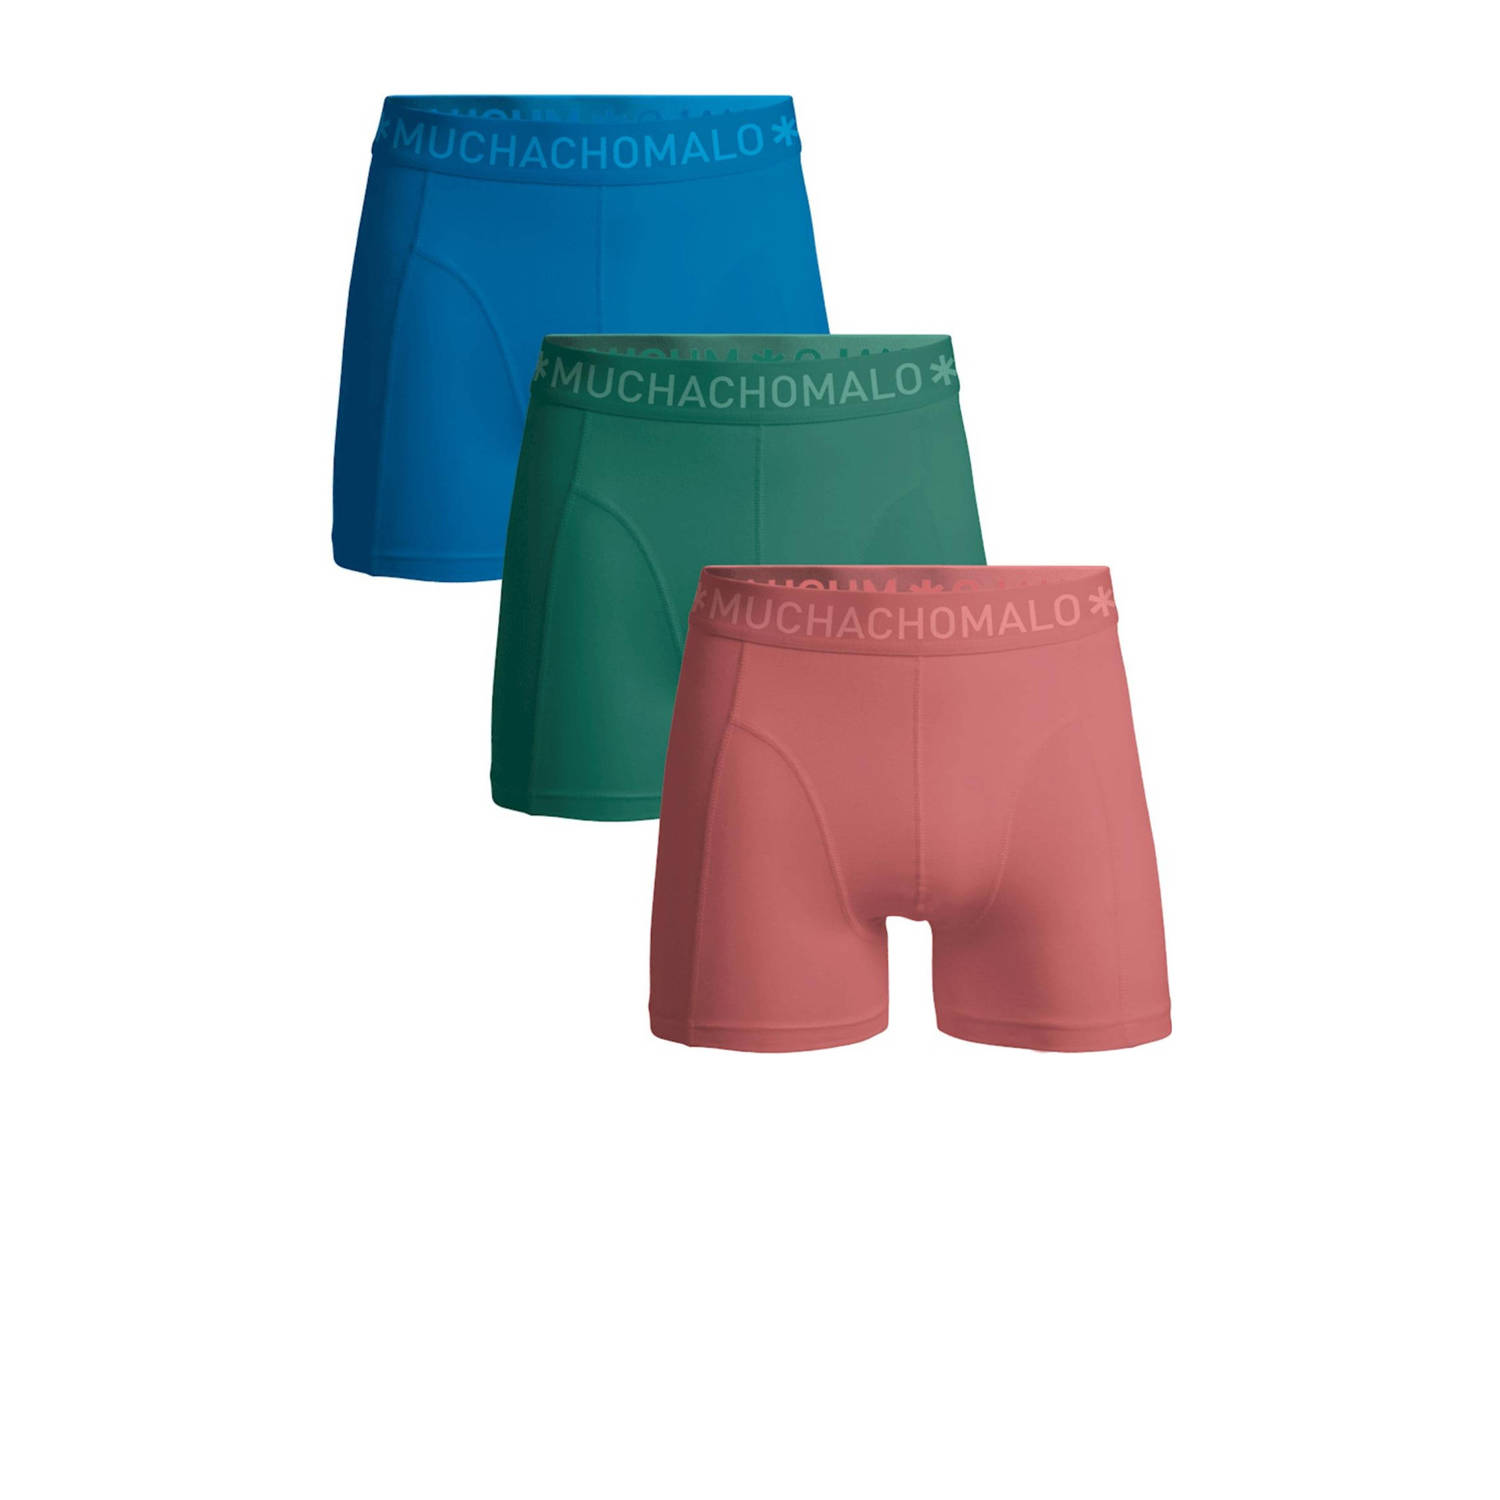 Muchachomalo boxershort SOLID- set van 3 blauw groen roze